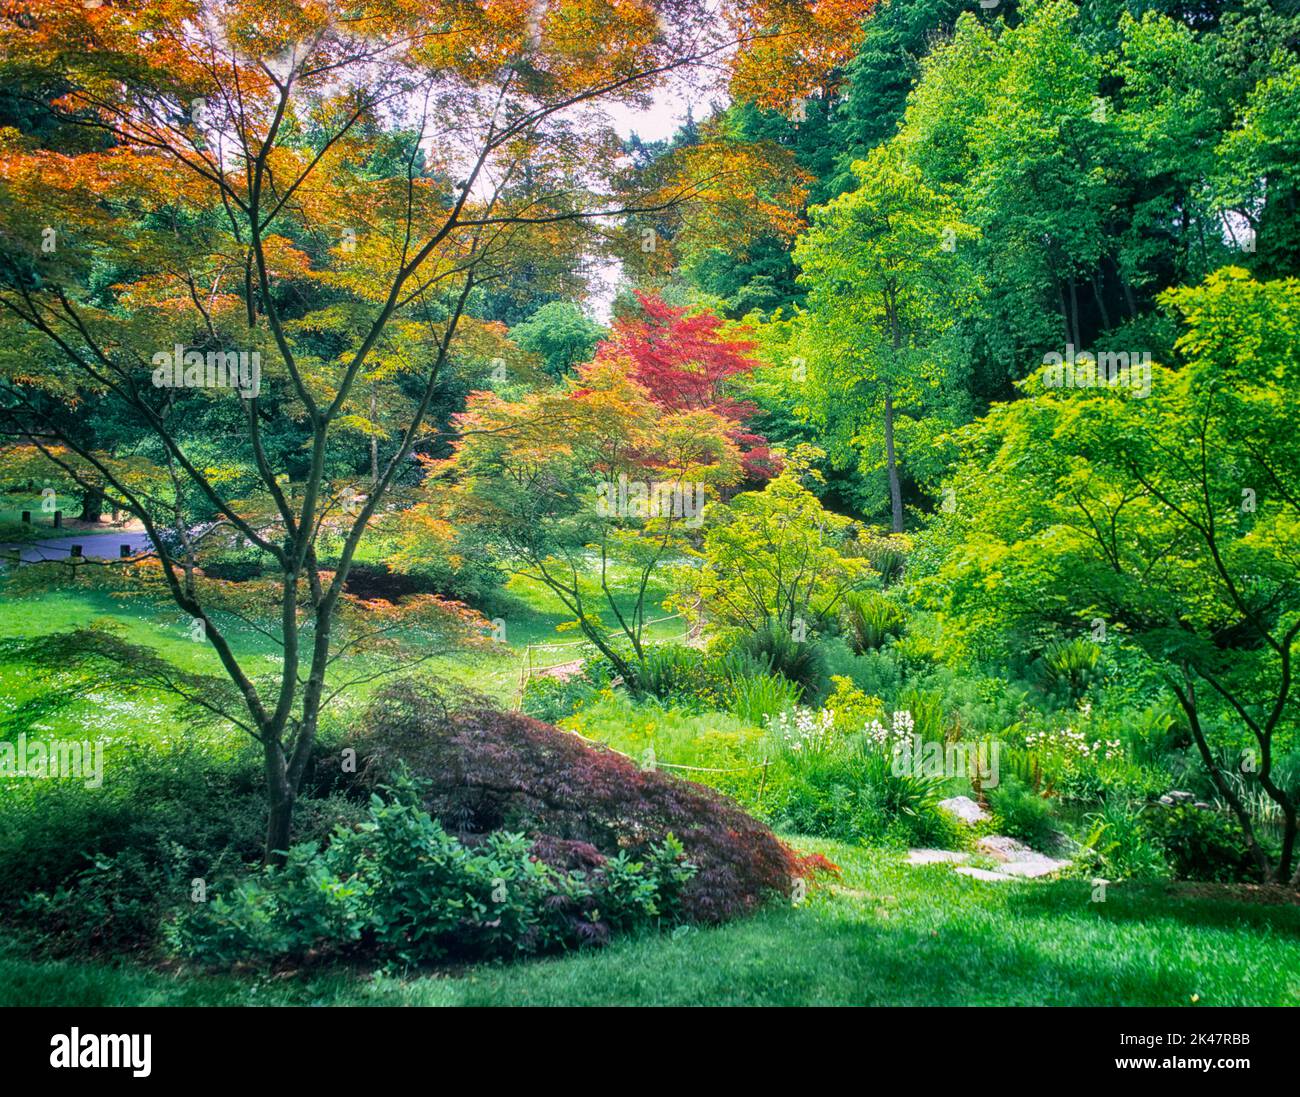 A variety of Japanese Maple trees in spring. Washington Park Arboretum, Seattle, Washington Stock Photo